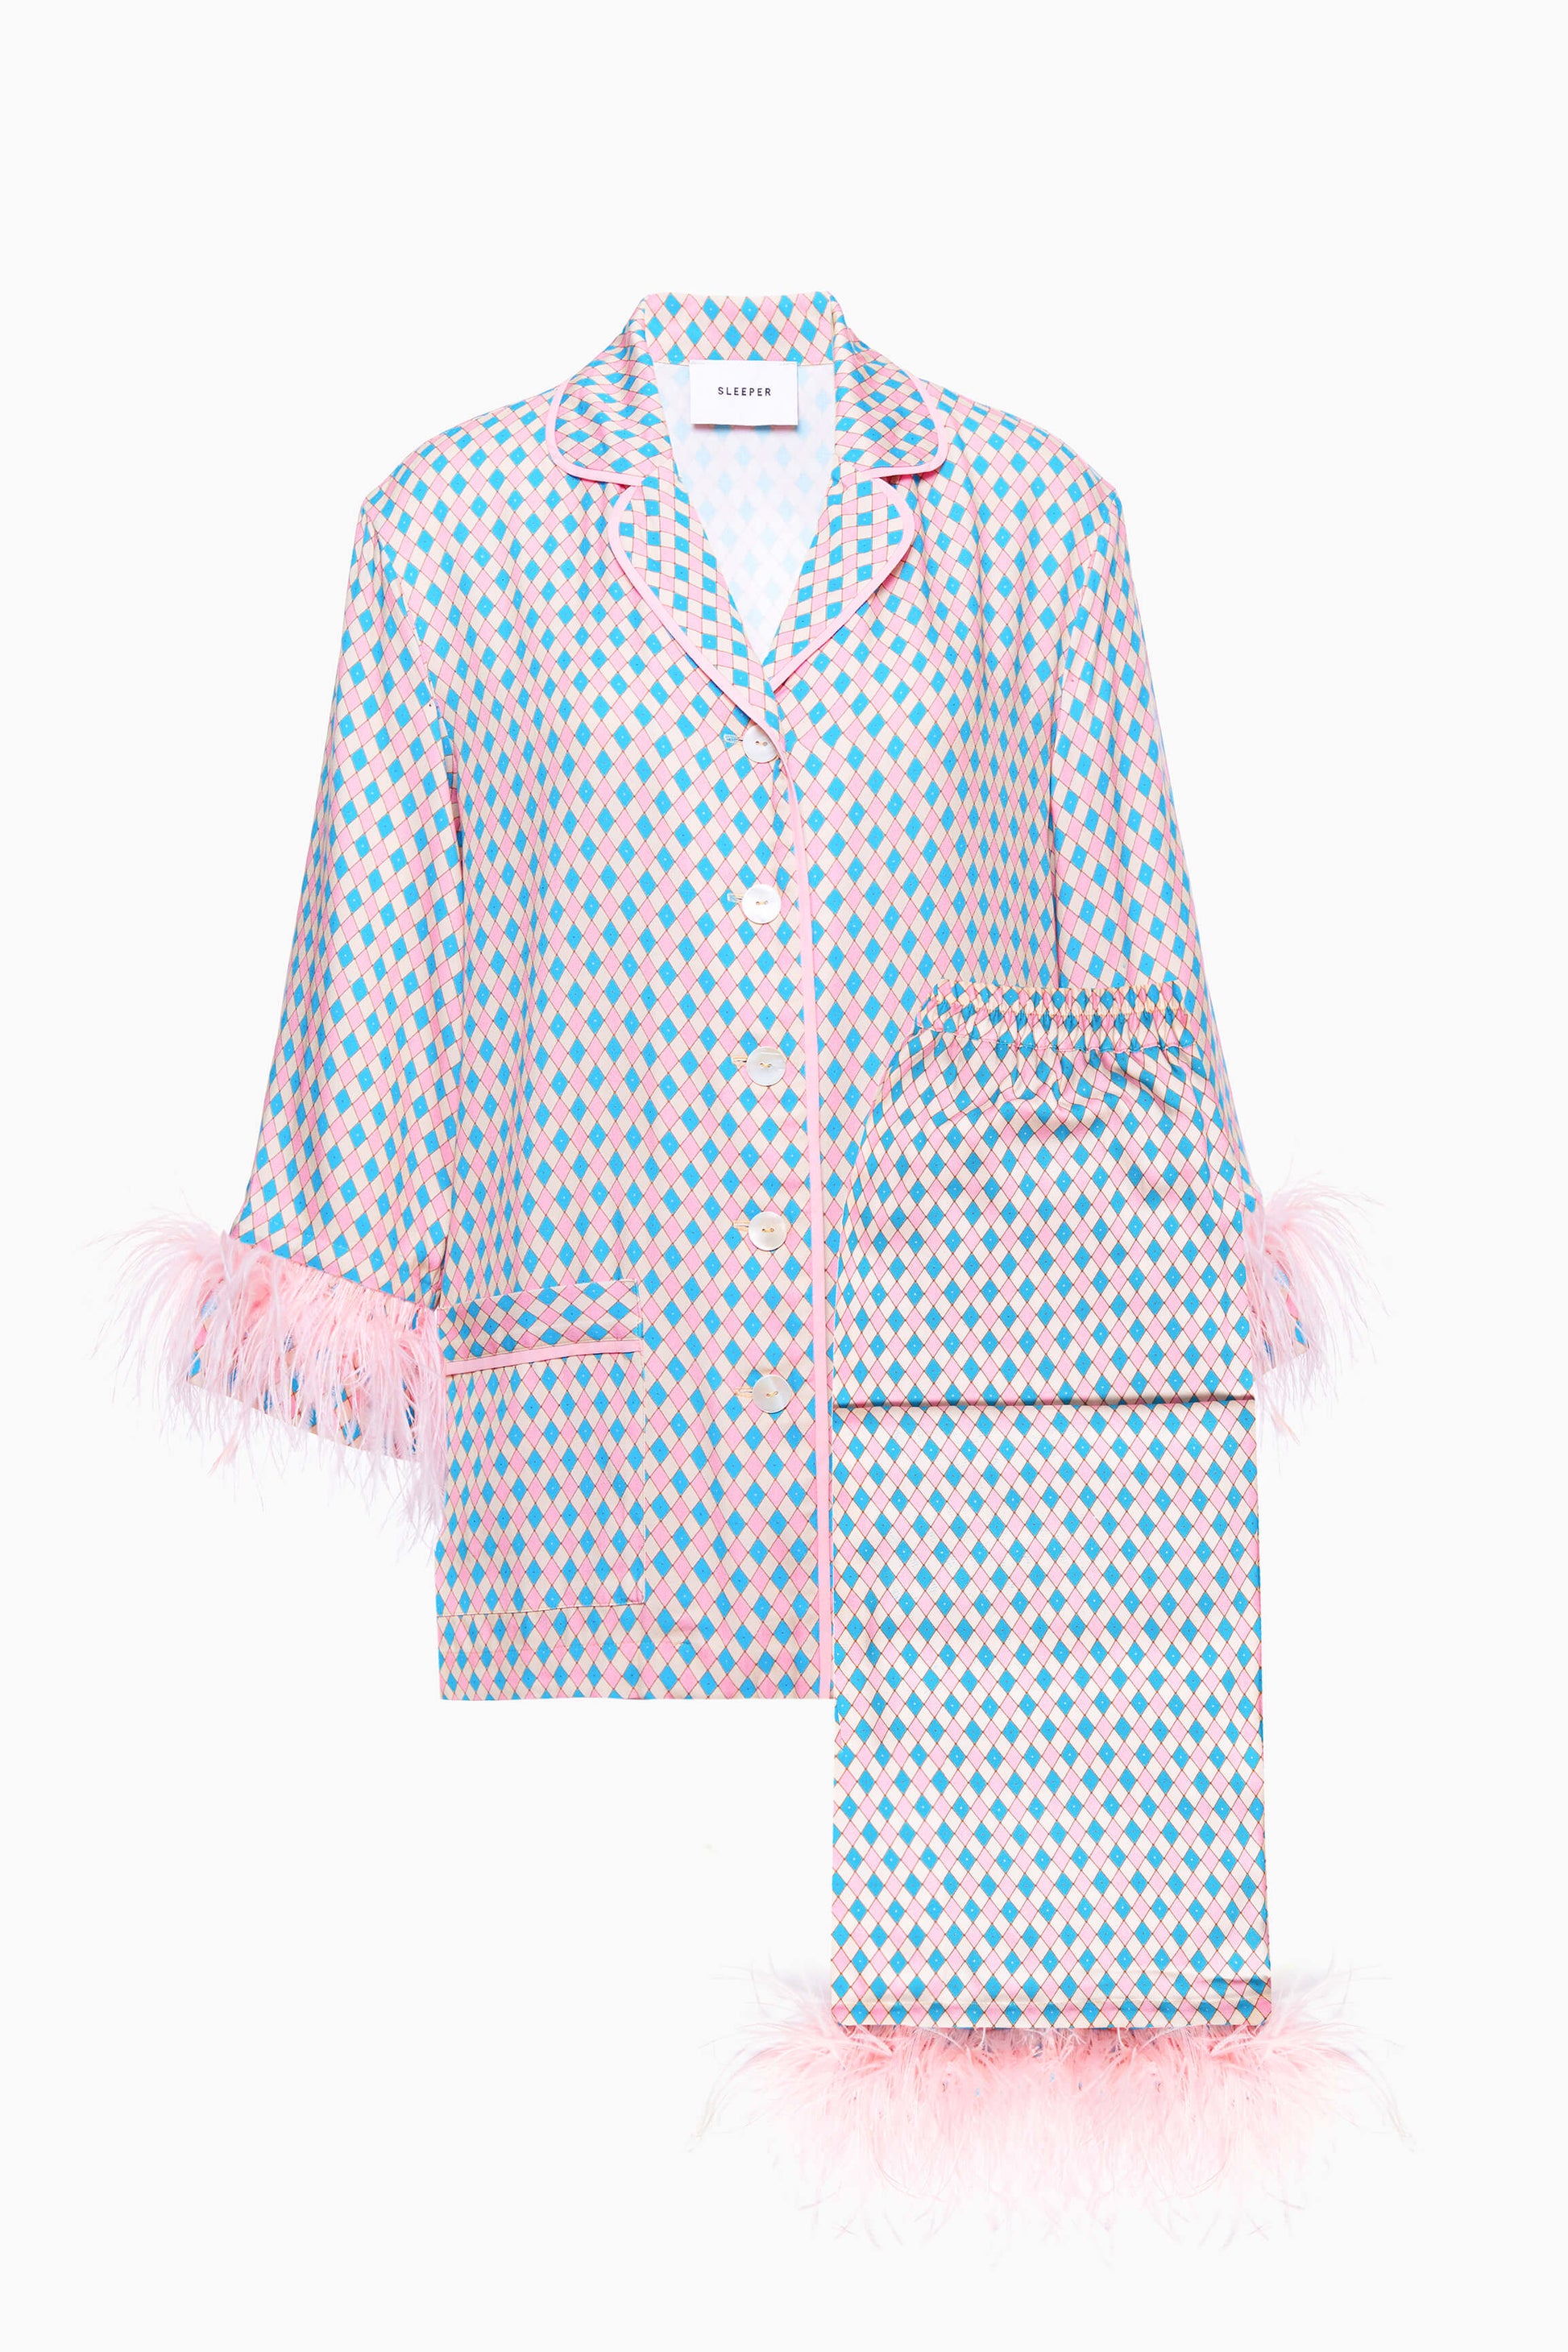 Pink pajama set  Sizeless pajamas by Sleeper